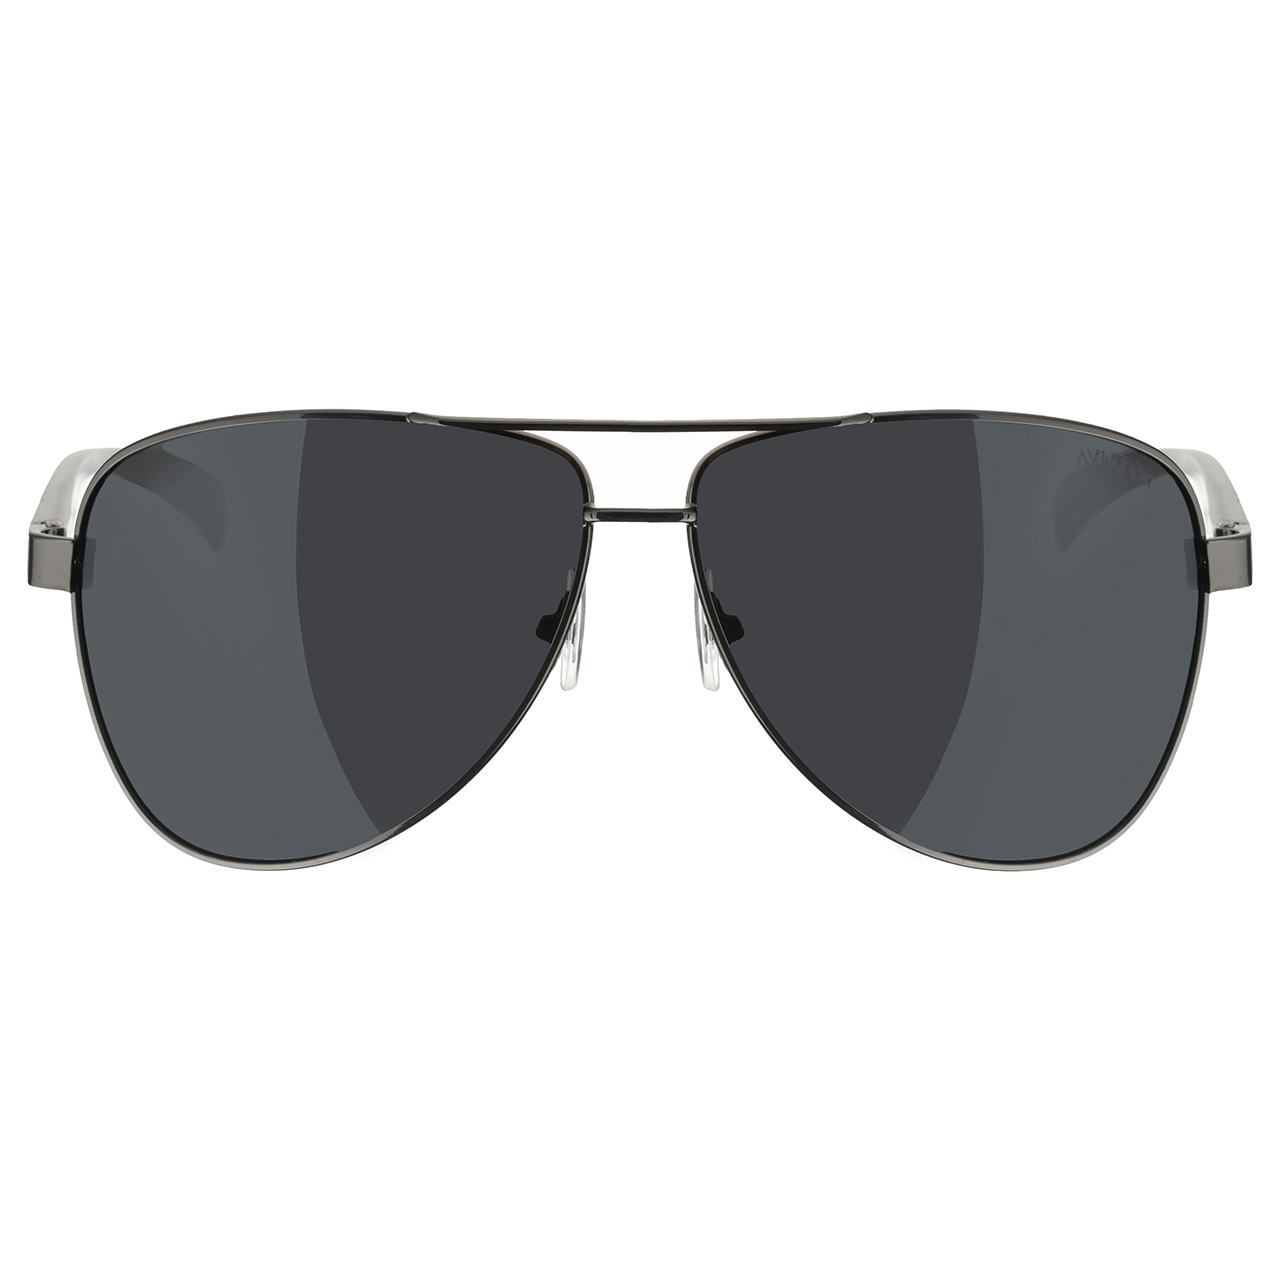 عینک آفتابی آویاتور مدل 80201 MG